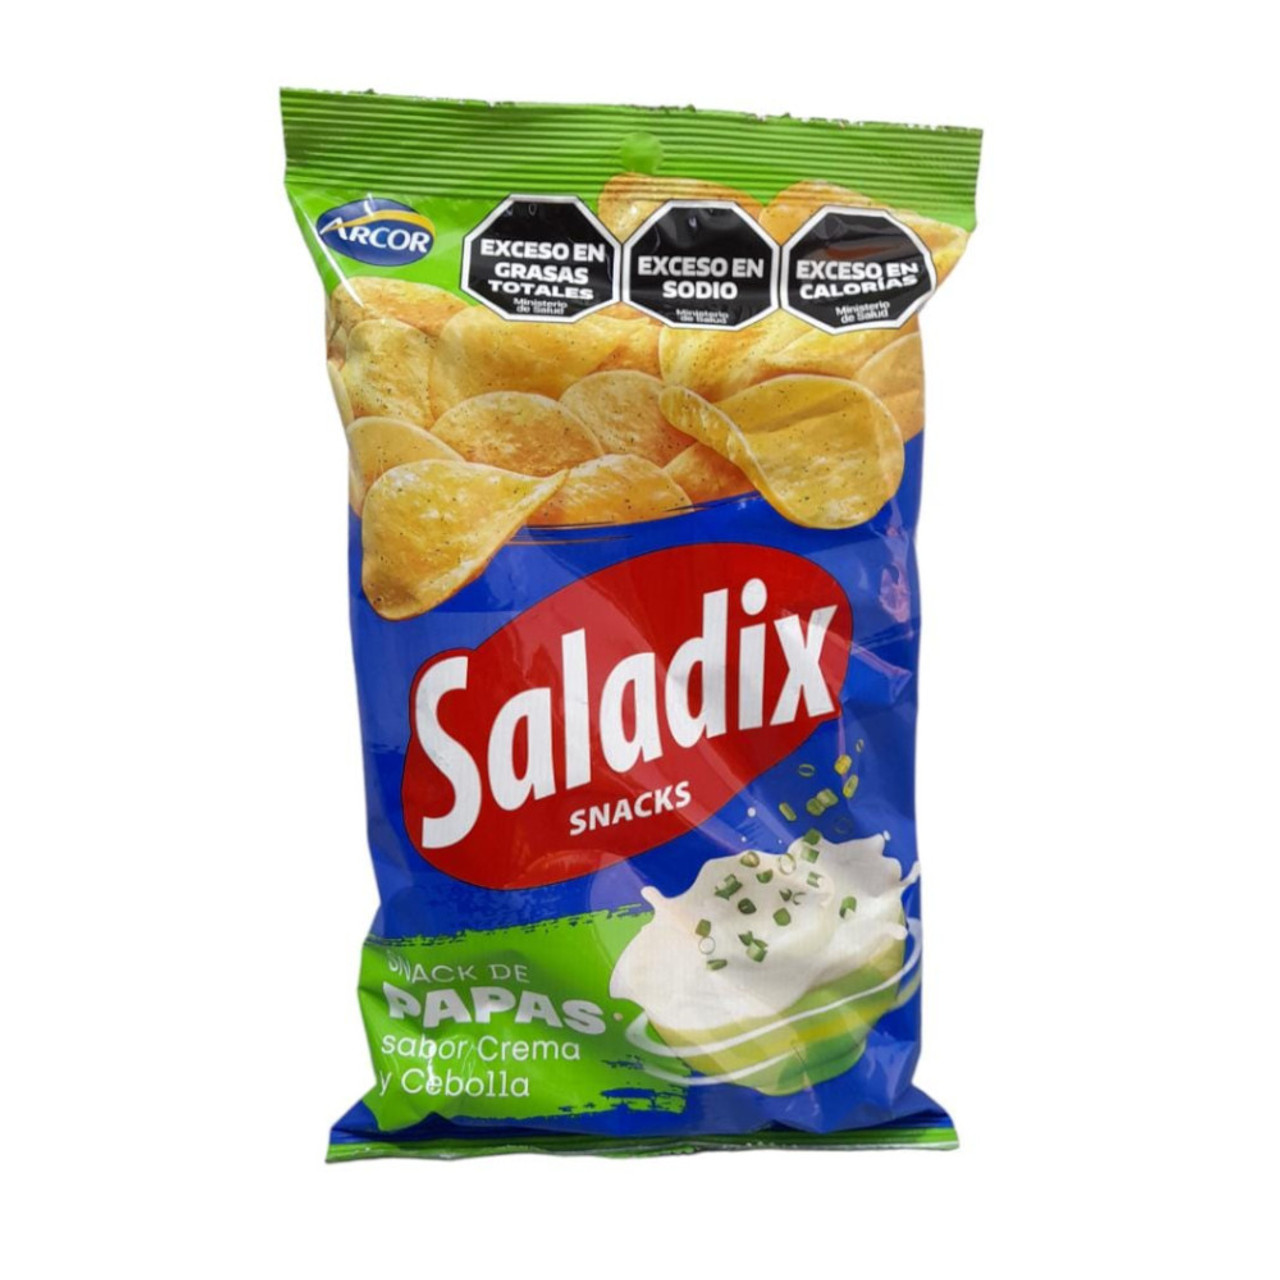 Saladix Cebolla y Crema Papas Fritas Potato Chips Snack Onion & Cream  Flavor Crunchy Snack, 95